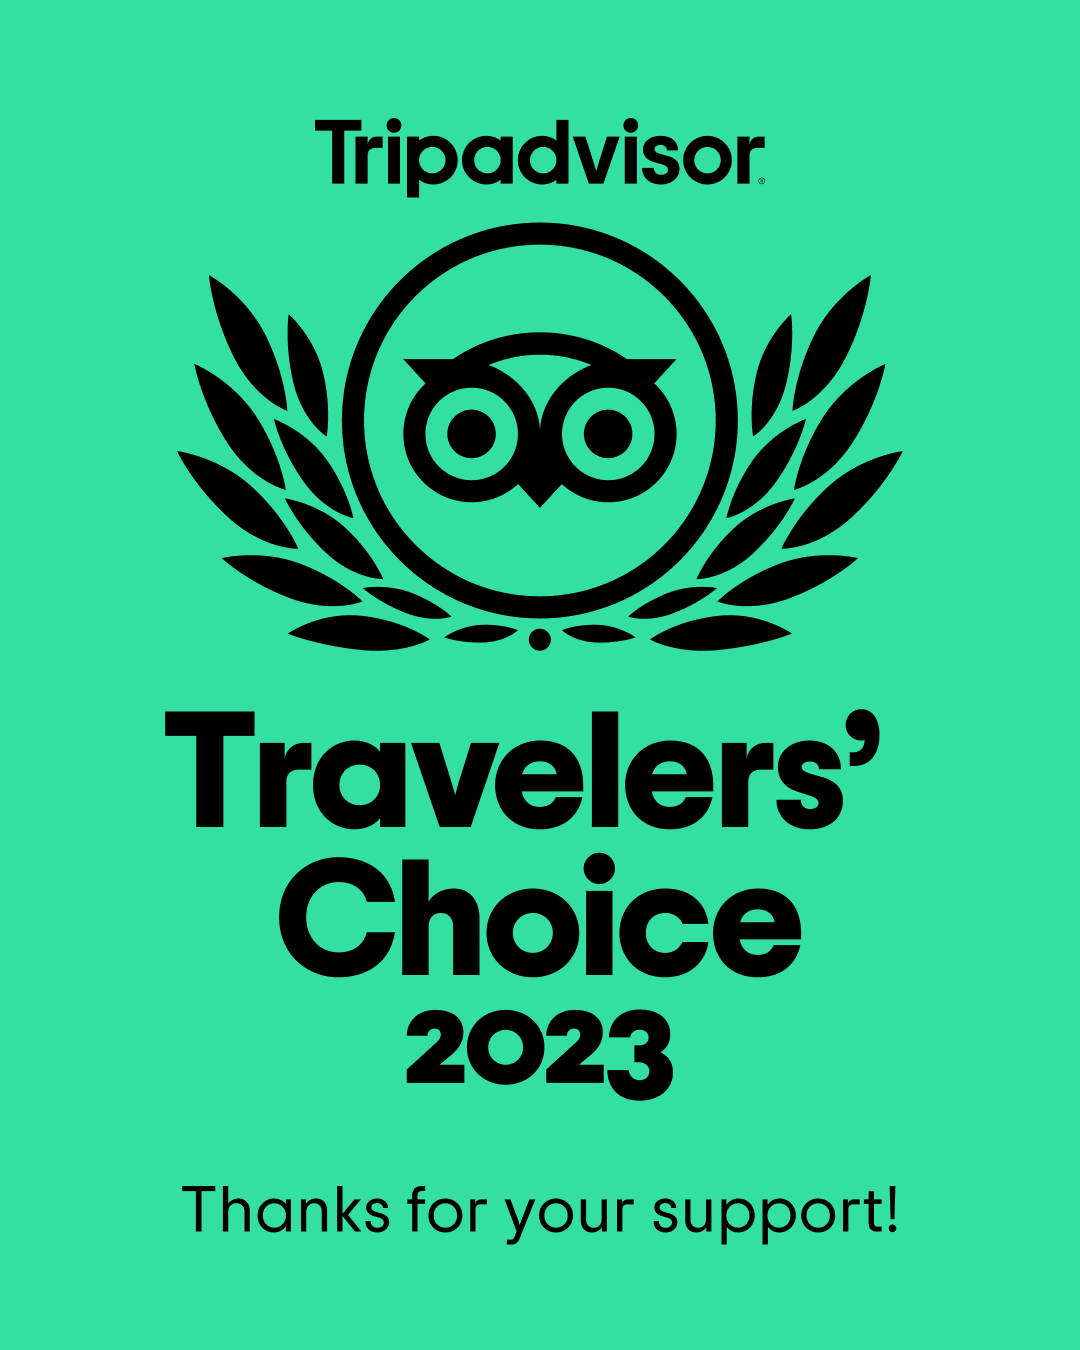 Chilli Ranch wins TripAdvisor Traveler’s Choice 2023 Award!